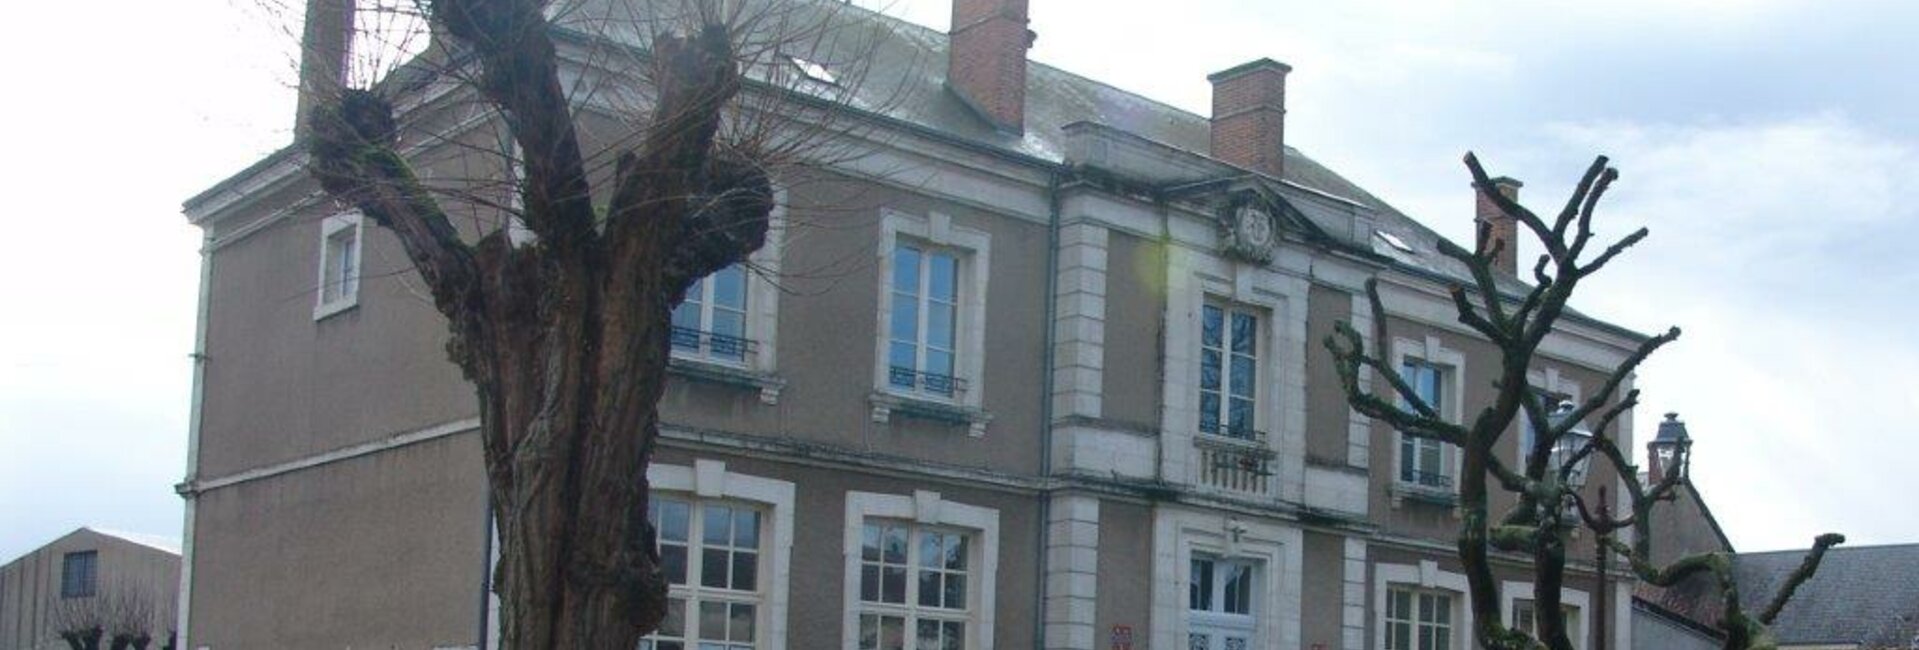 Le syndicat scolaire d'Aschères-le-Marché (45) Loiret